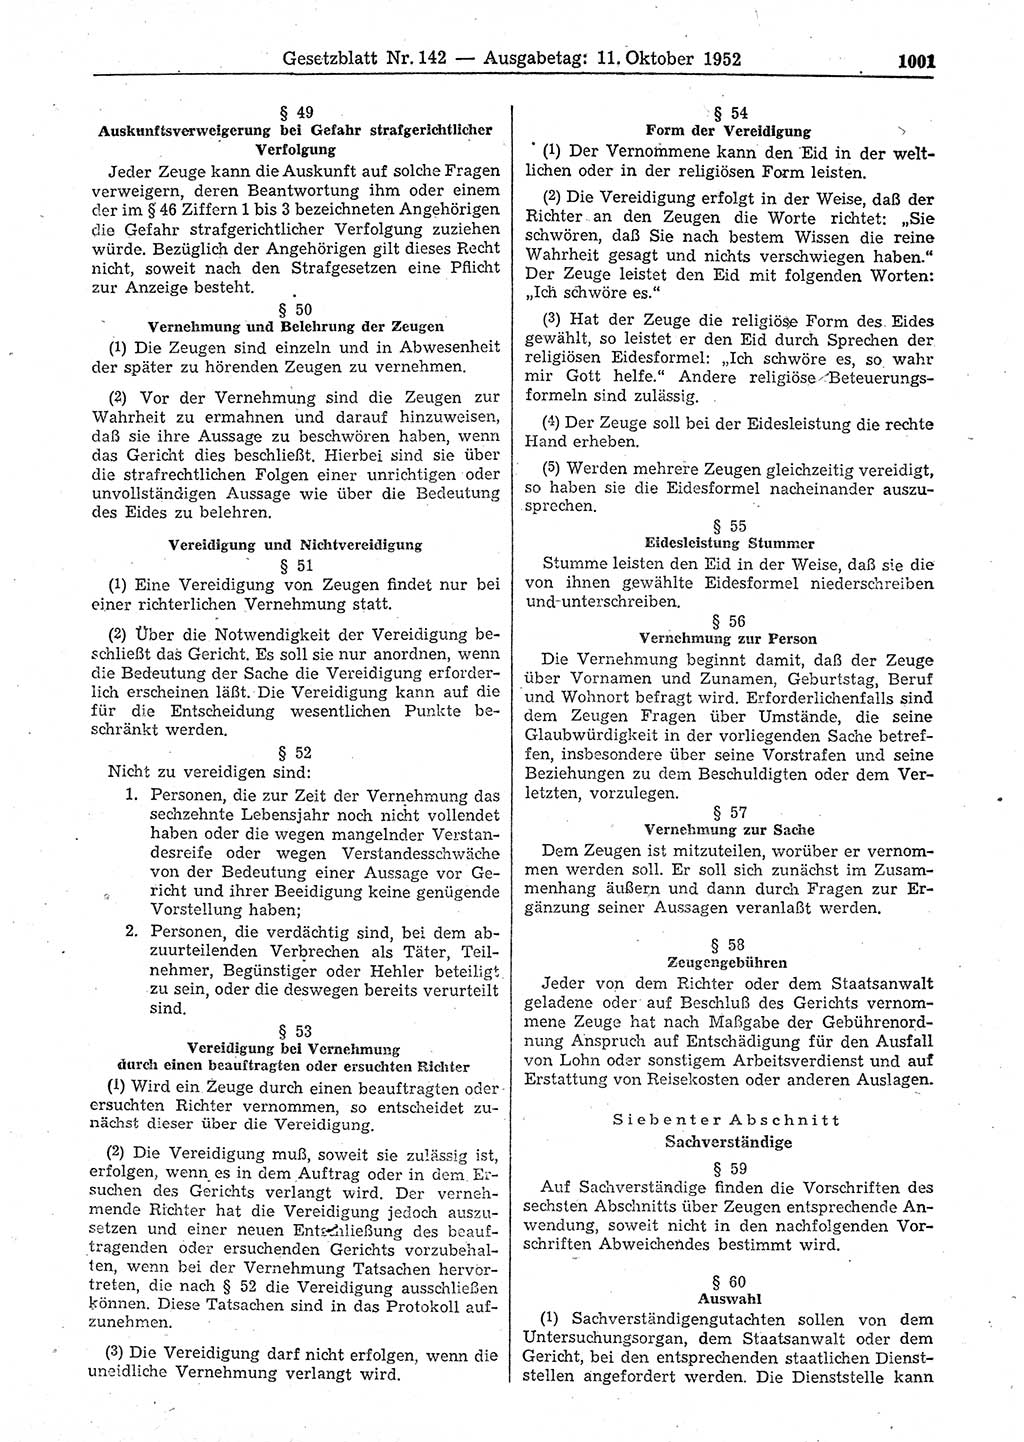 Gesetzblatt (GBl.) der Deutschen Demokratischen Republik (DDR) 1952, Seite 1001 (GBl. DDR 1952, S. 1001)